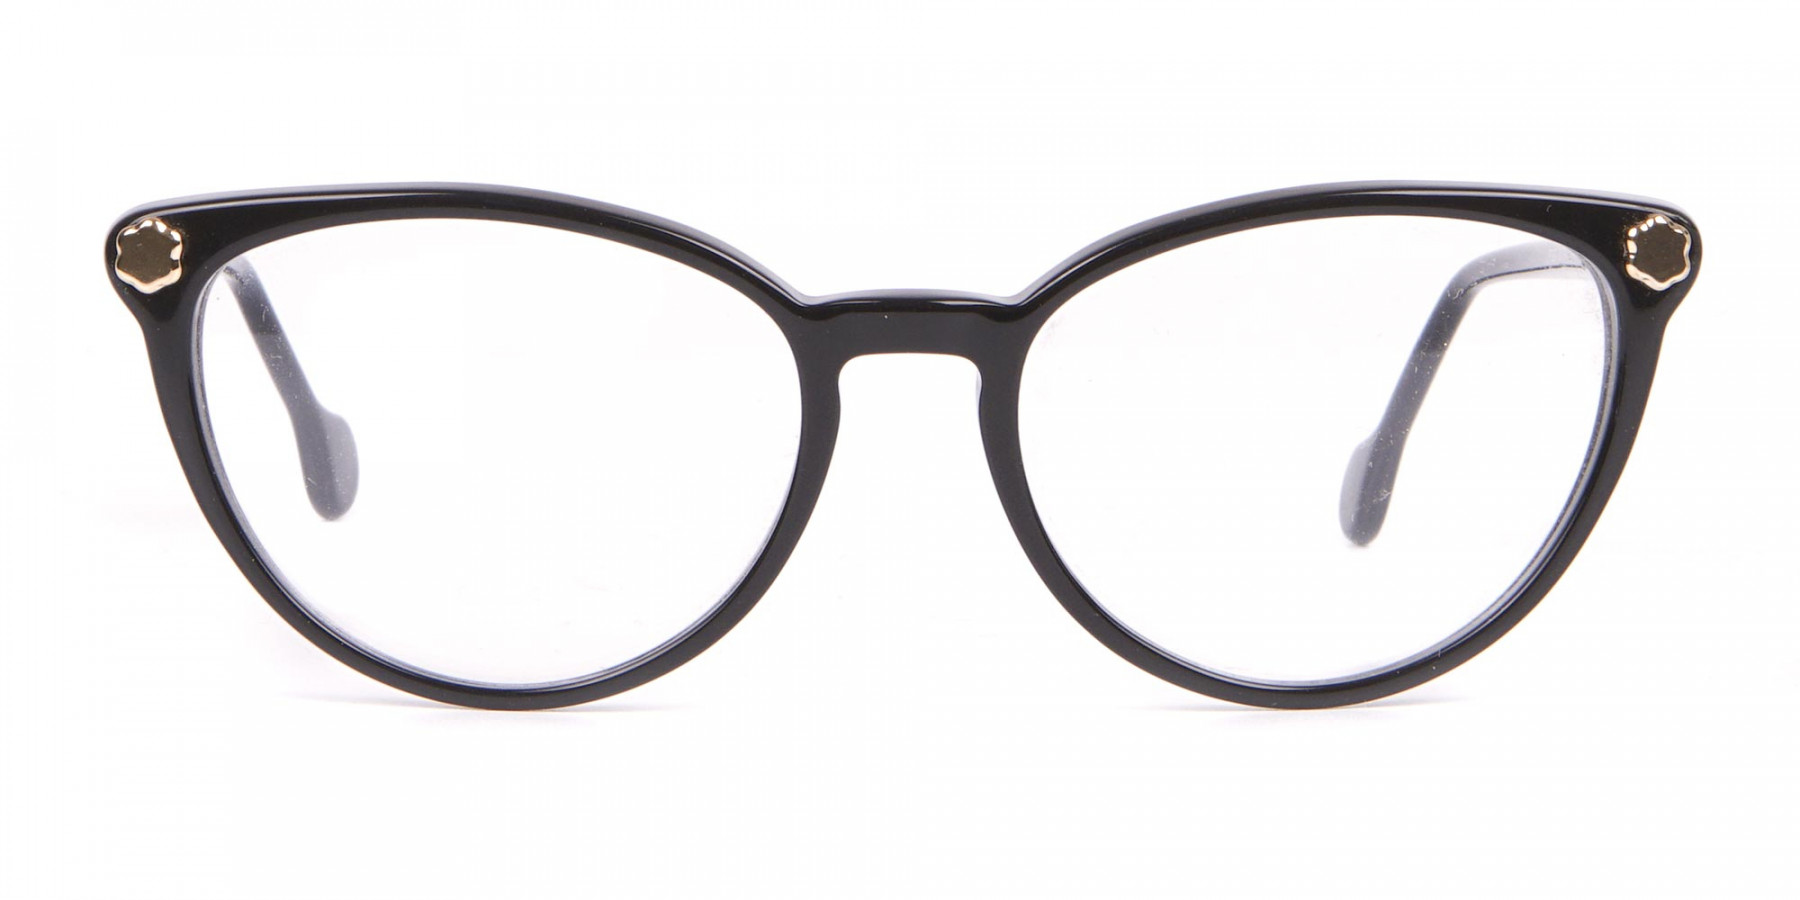 Salvatore Ferragamo SF2837 Women's Cateye Glasses Black-1